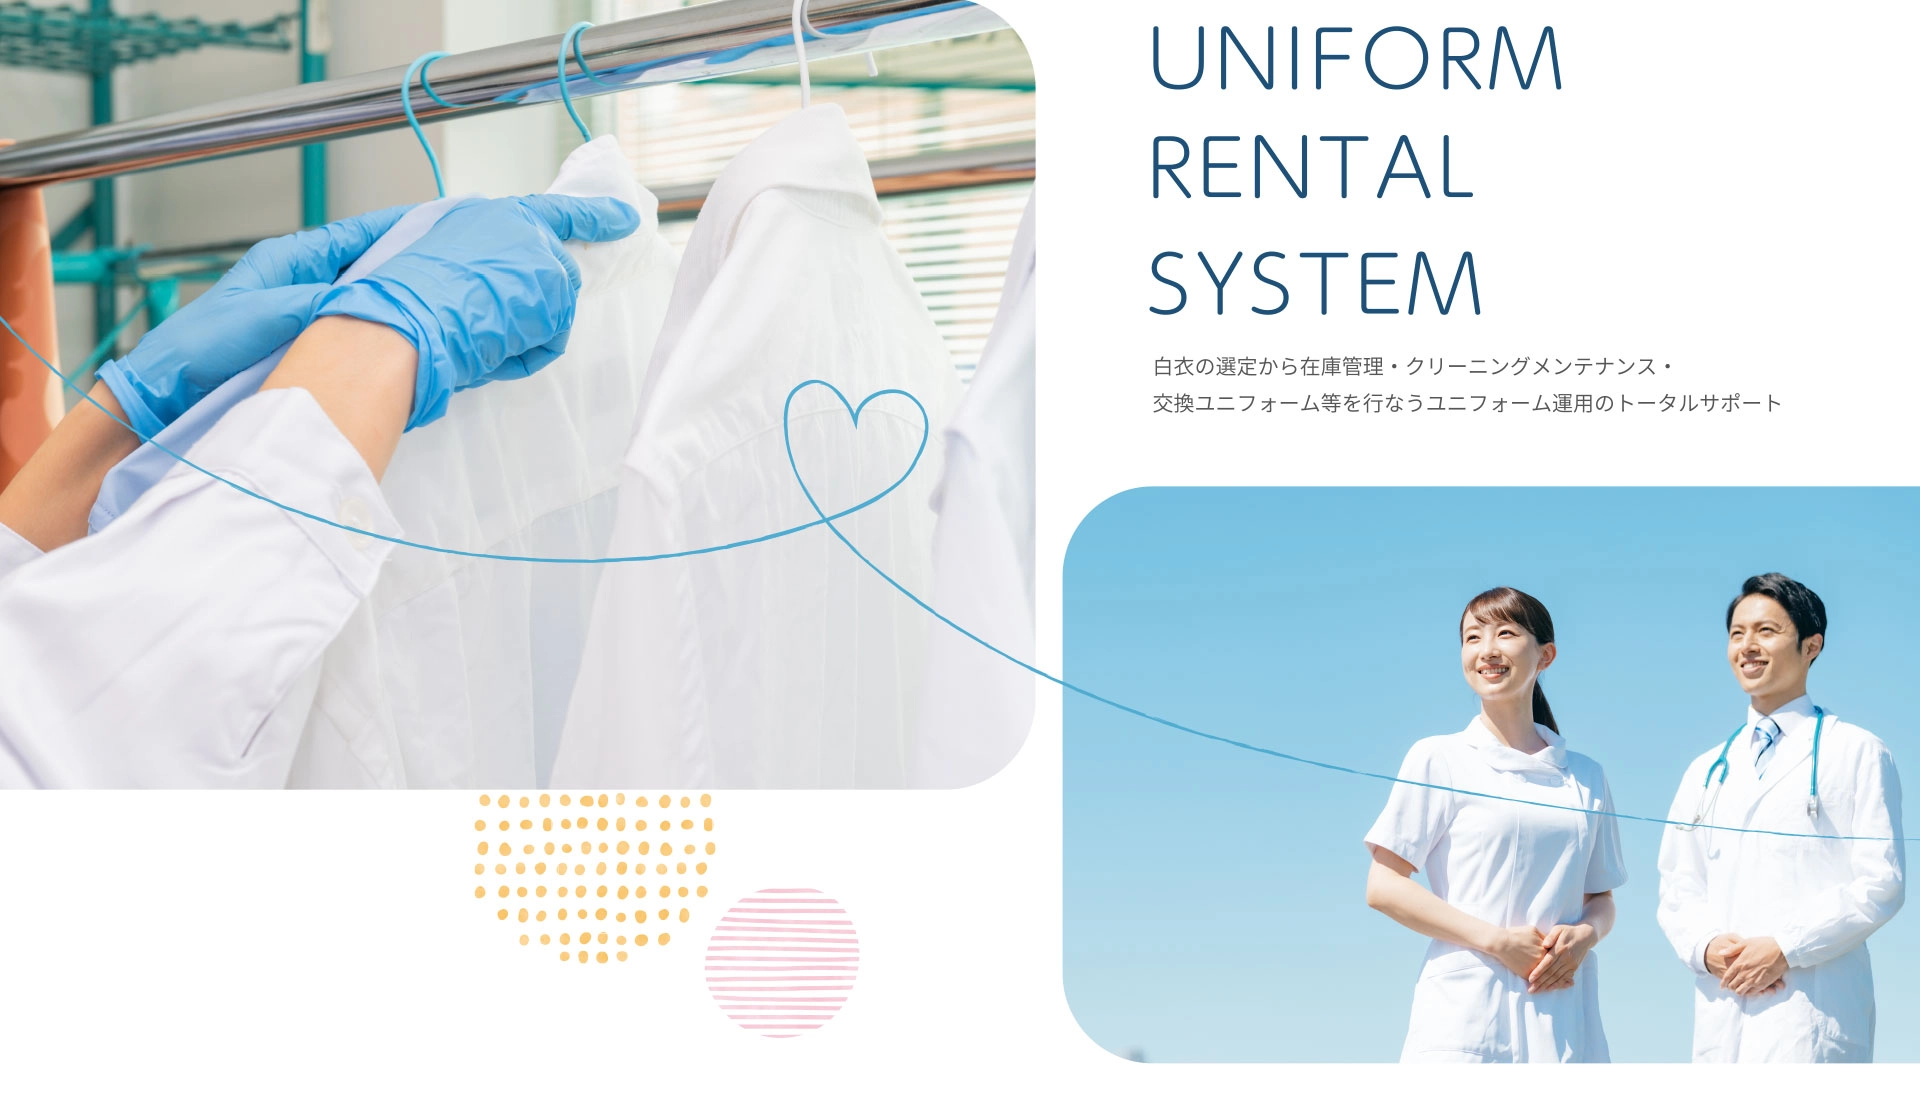 UNIFORM RENTAL SYSTEM　白衣の選定から在庫管理・クリーニングメンテナンス・交換ユニフォーム等を行なうユニフォム運用のトータルサポート